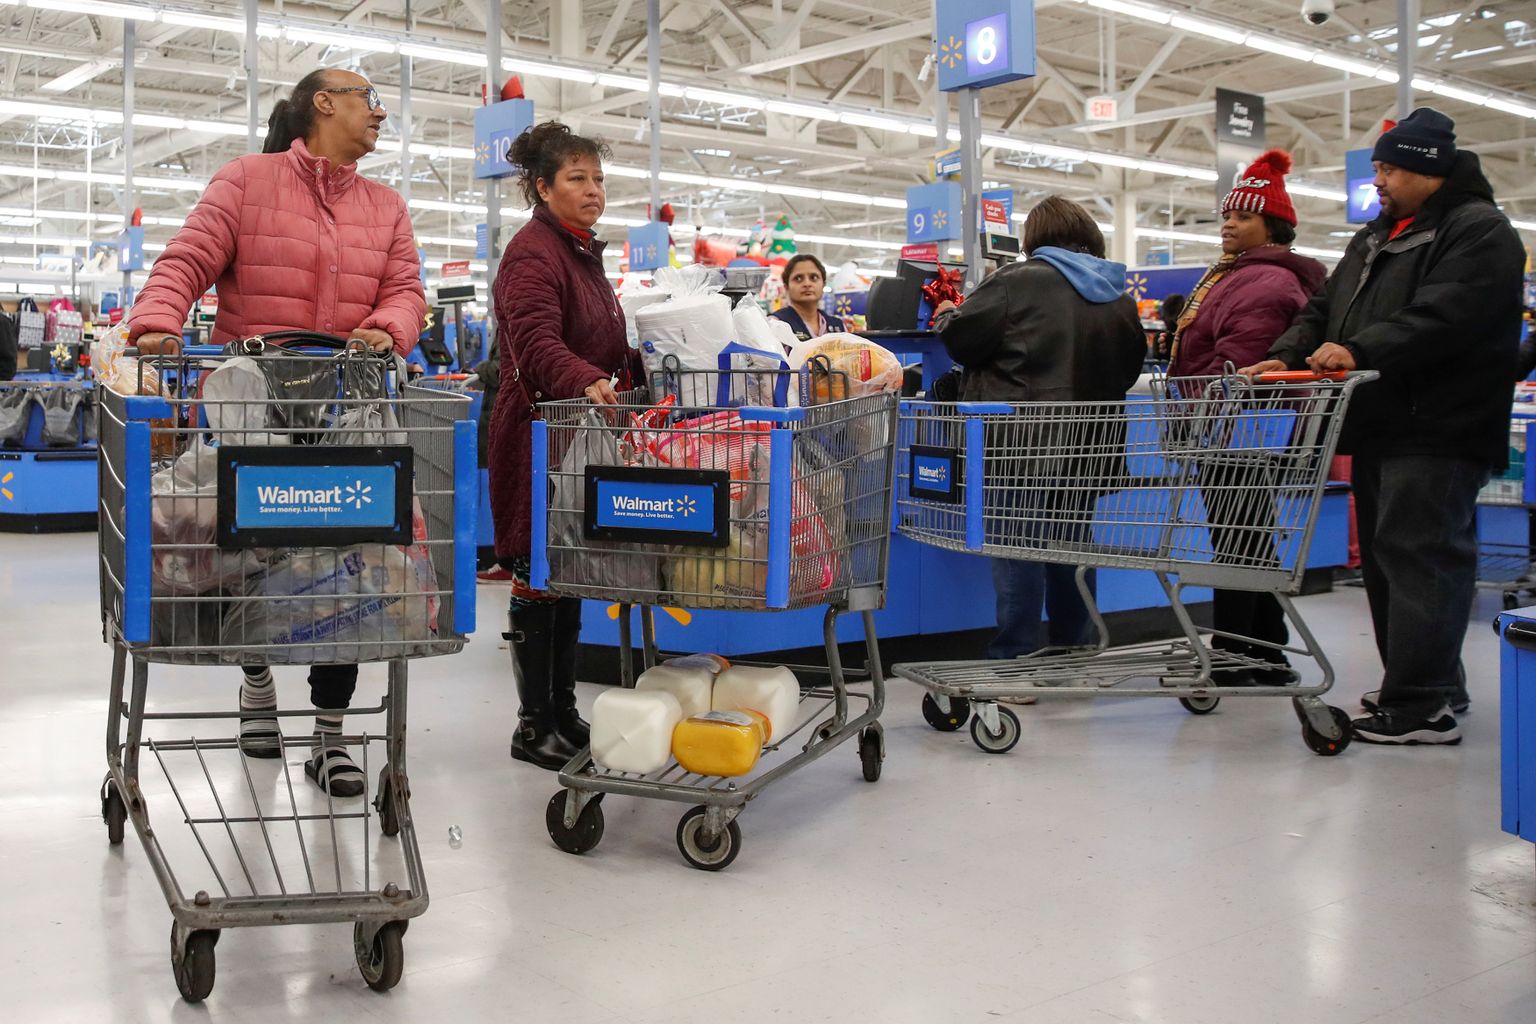 Pilt on illustratiivne: inimesed Walmartis.